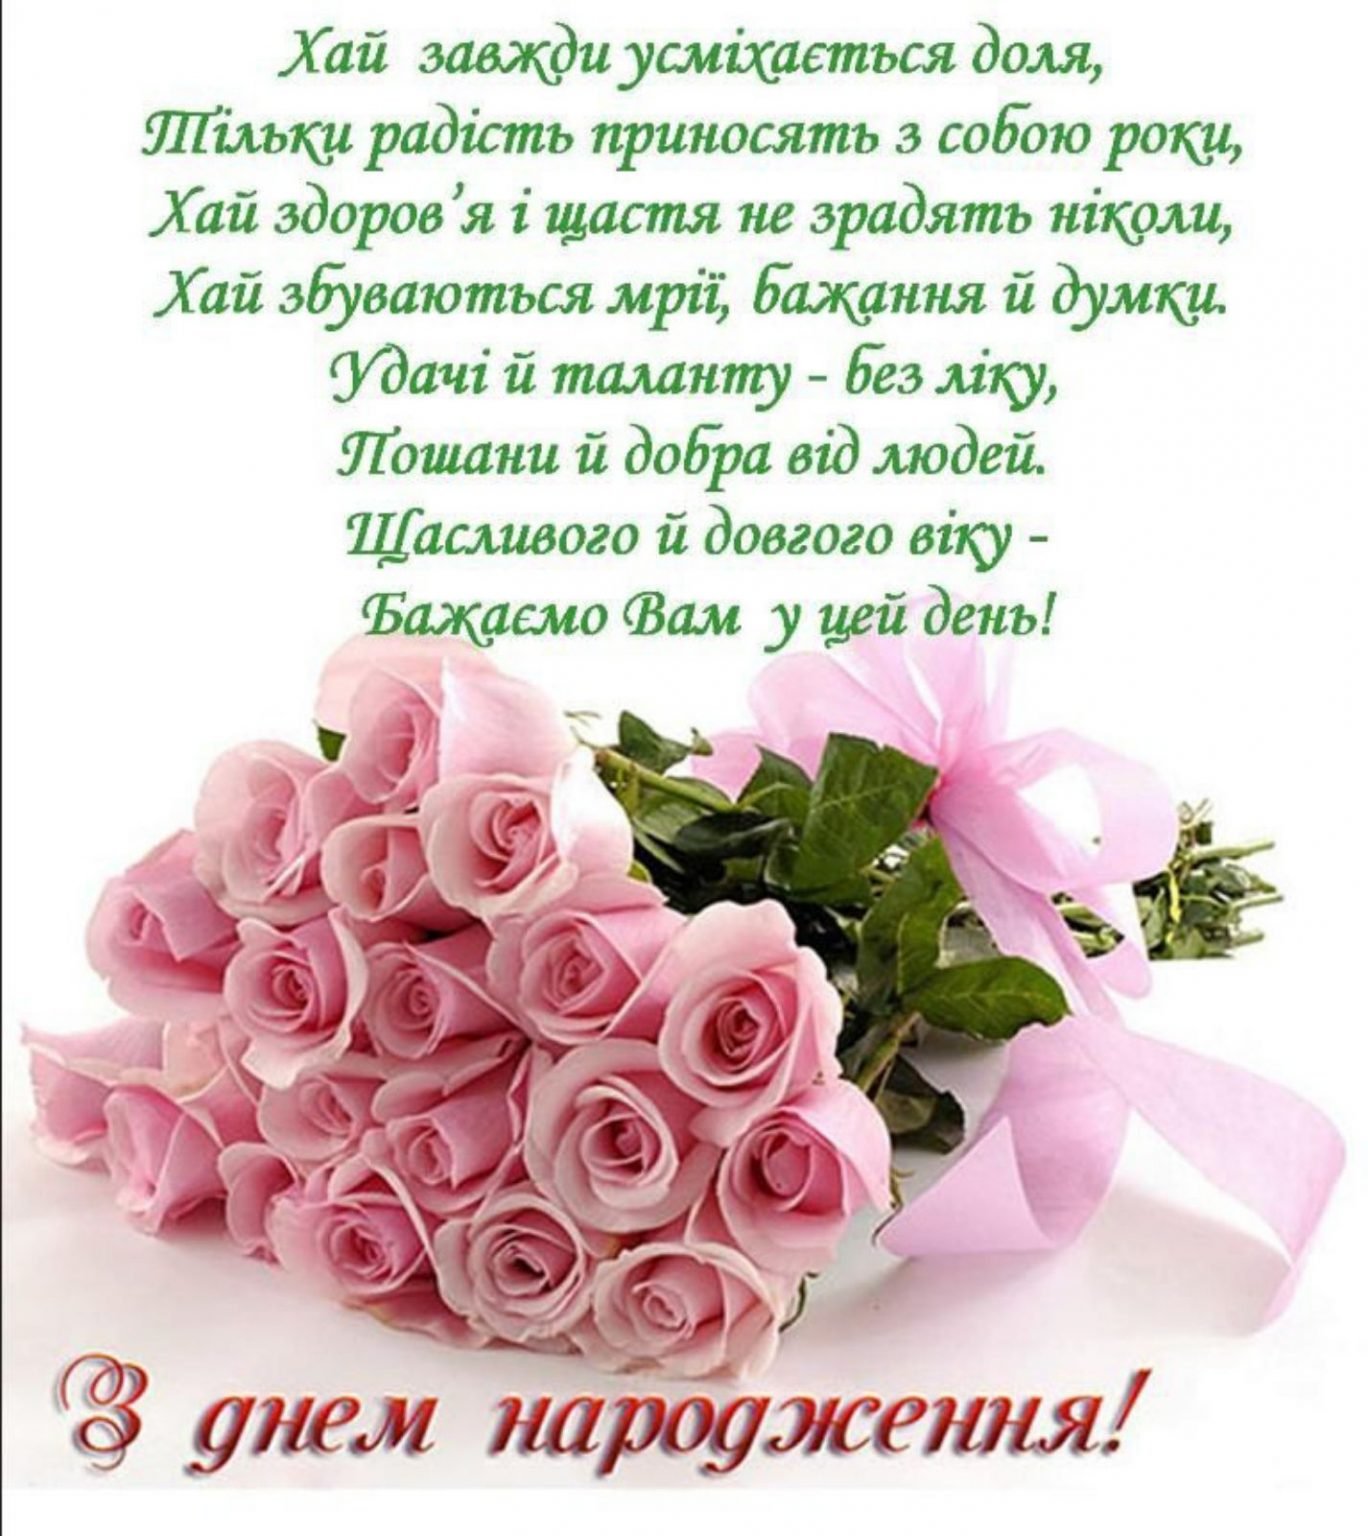 Картинки з днем народження жінці. З днем народження. Поздравления с днём рождения на украинском языке. З днем народженняжінці. Открытки с днём рождения на украинском языке.